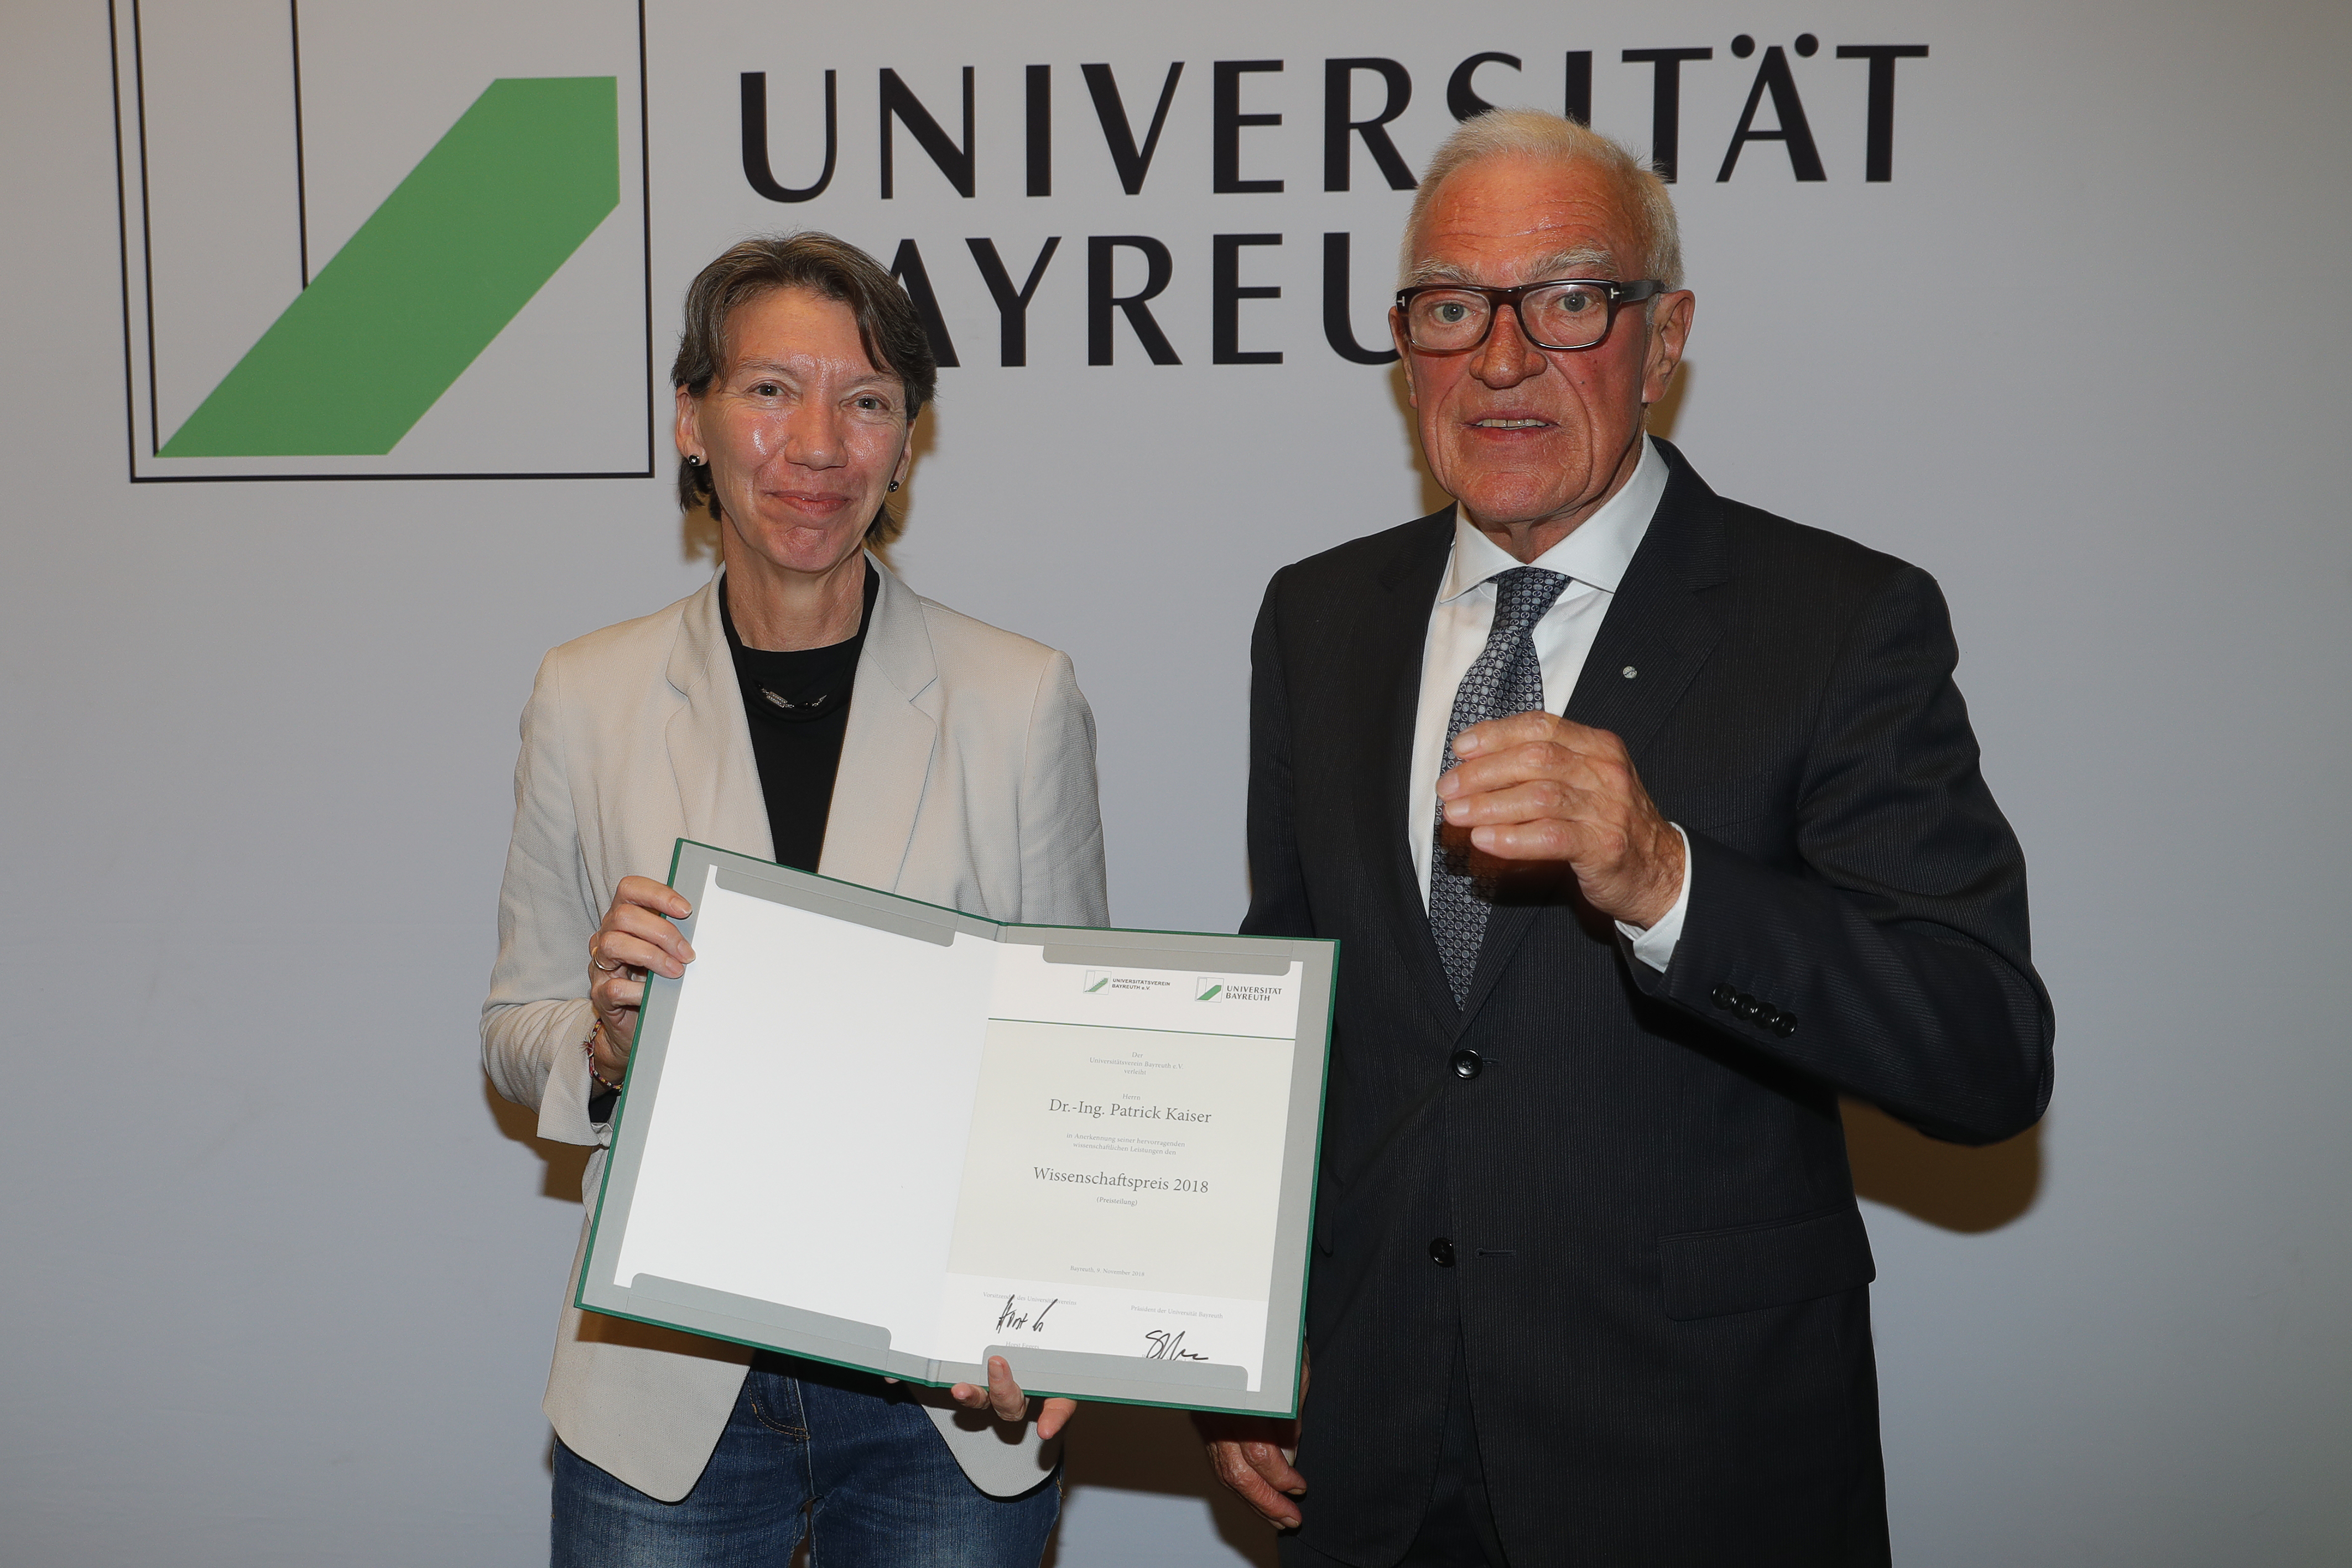 Verleihung des Wissenschaftspreises des Universitätsvereins Bayreuth e.V. an Dr.-Ing. Patrick Kaiser (vertreten durch Professorin Dr. Ruth Freitag)